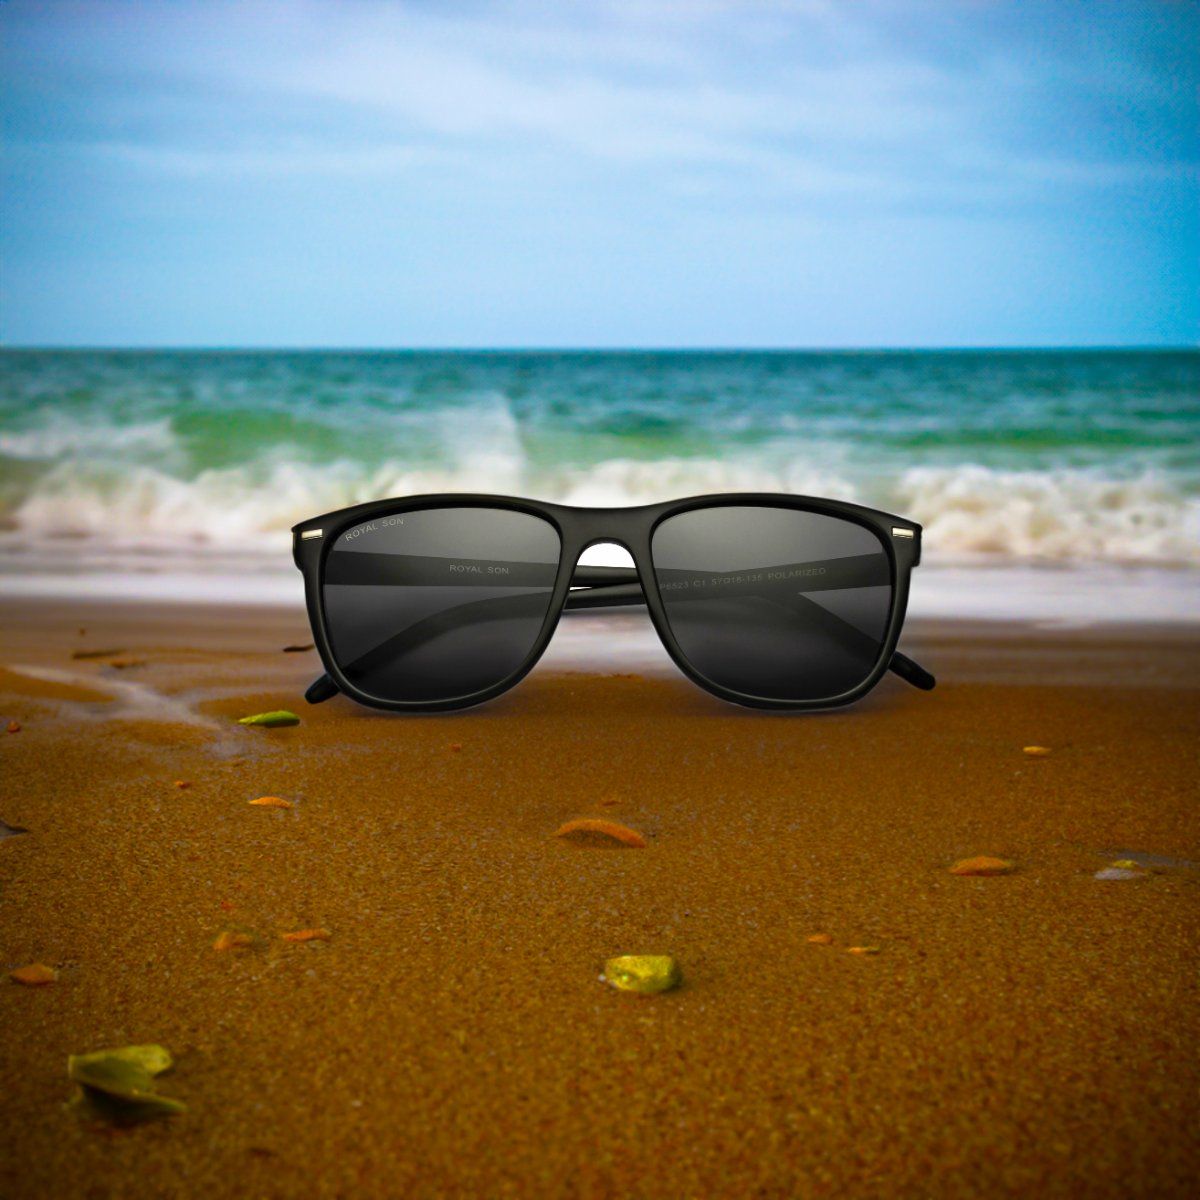 Buy Best branded+original+men+sunglasses Online At Cheap Price,  branded+original+men+sunglasses & Qatar Shopping